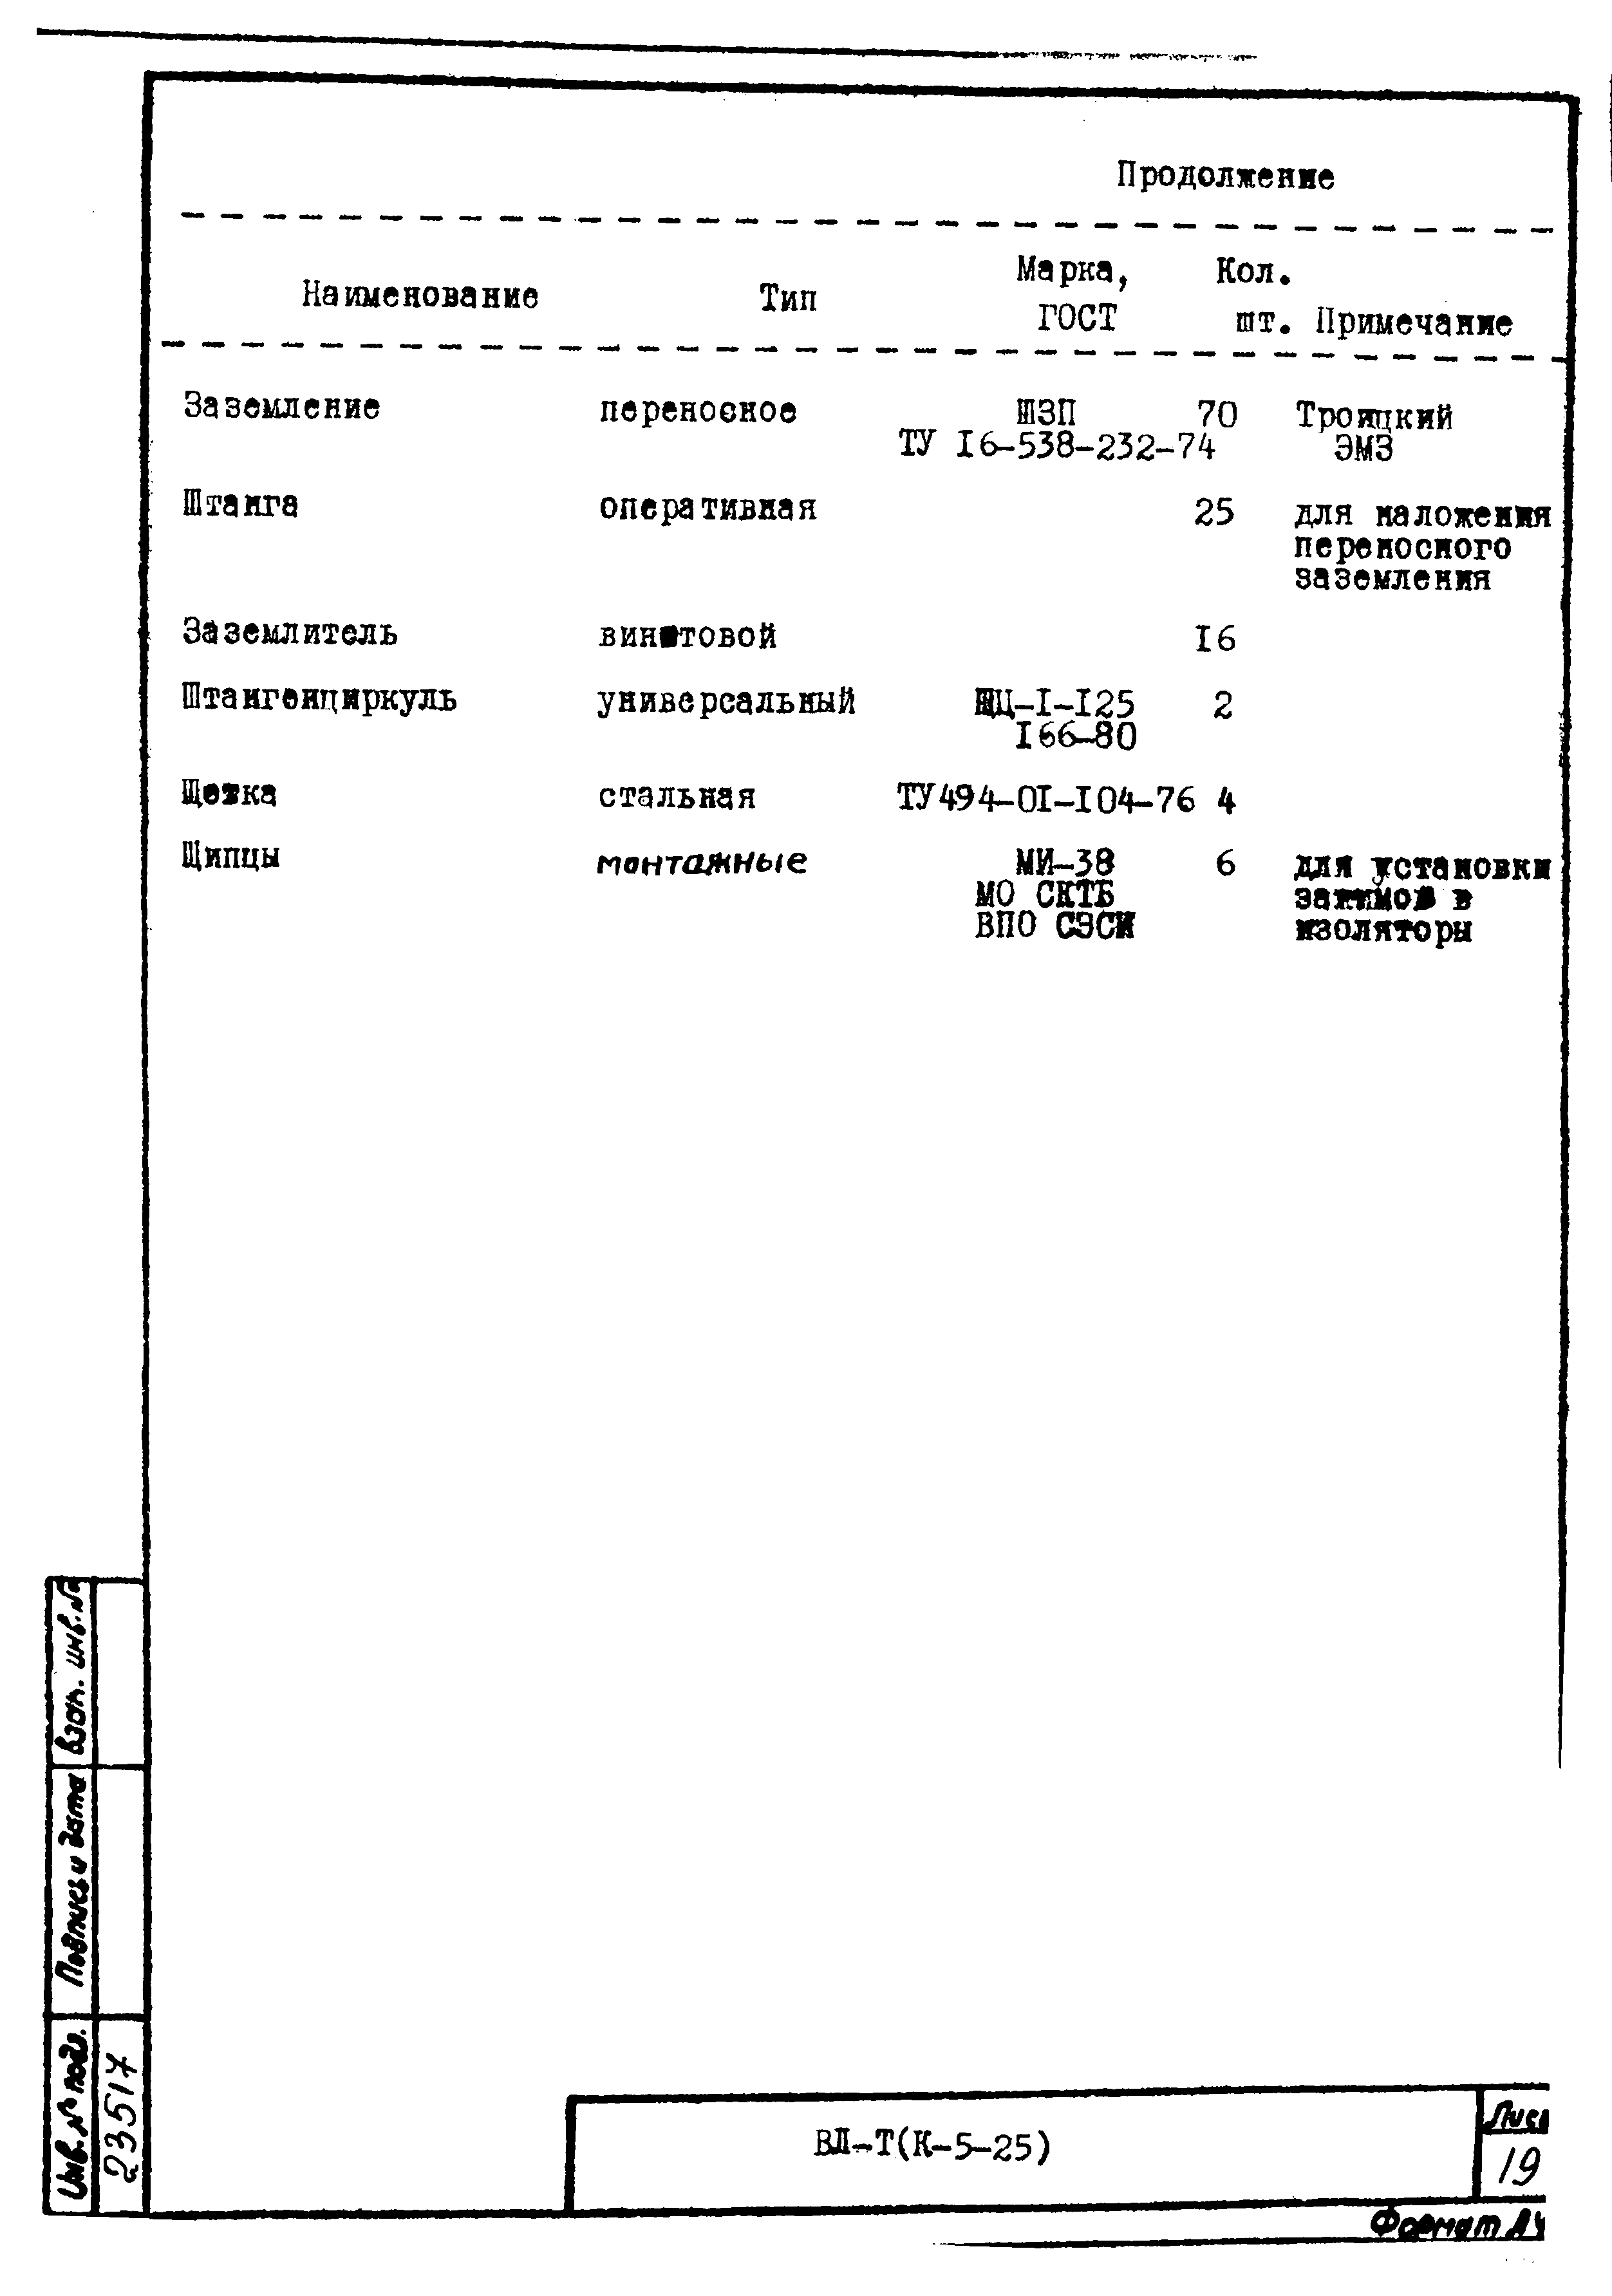 Технологическая карта К-5-25-34